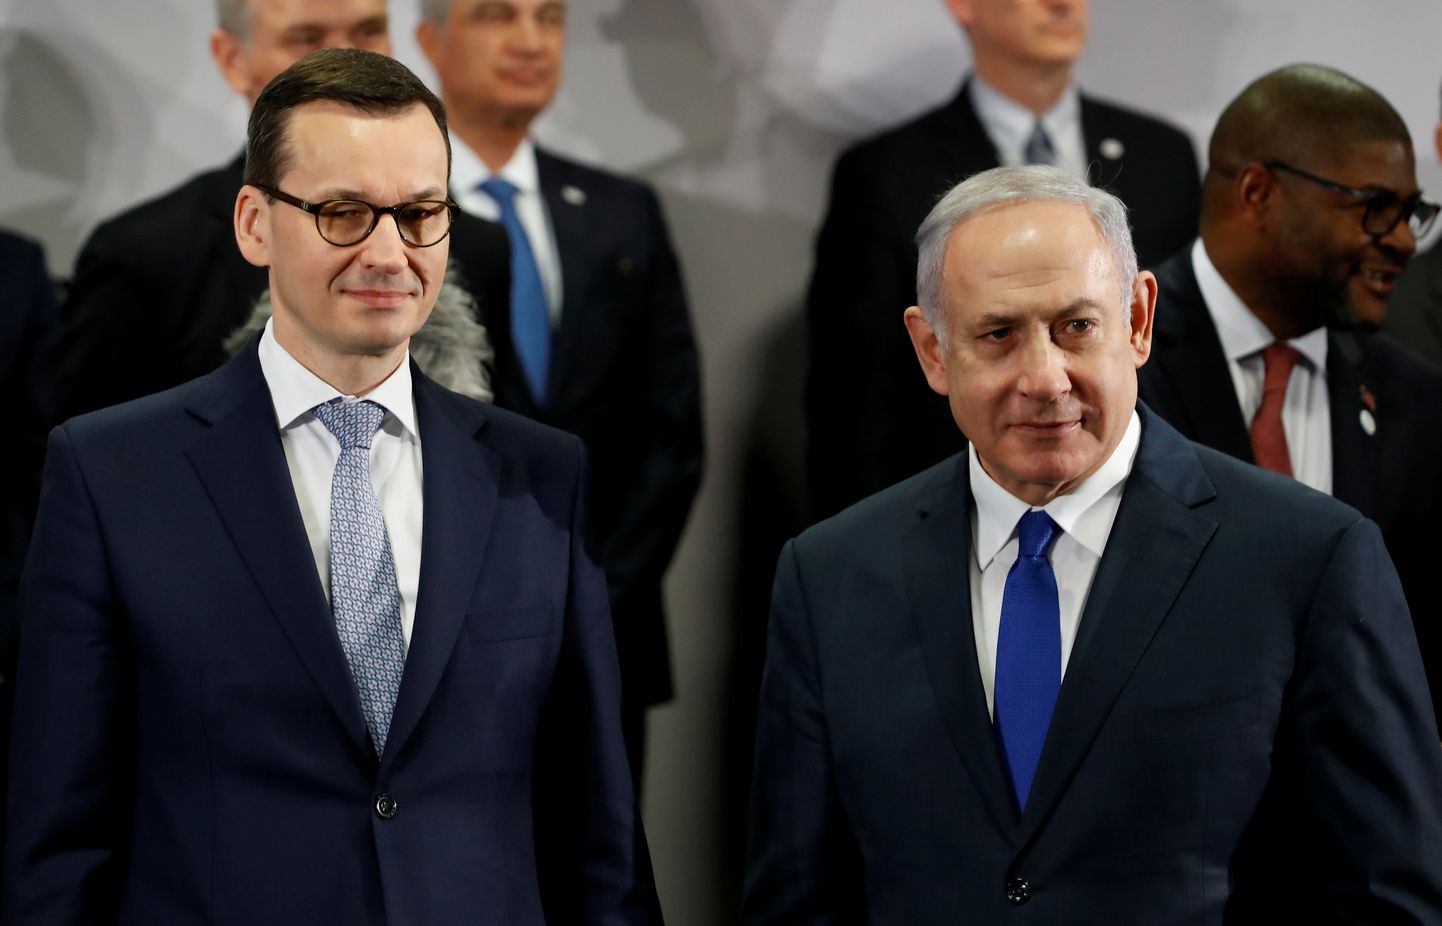 Poola peaminister Mateusz Morawiecki ja Iisraeli valitsusjuht Benjamin Netanyahu.